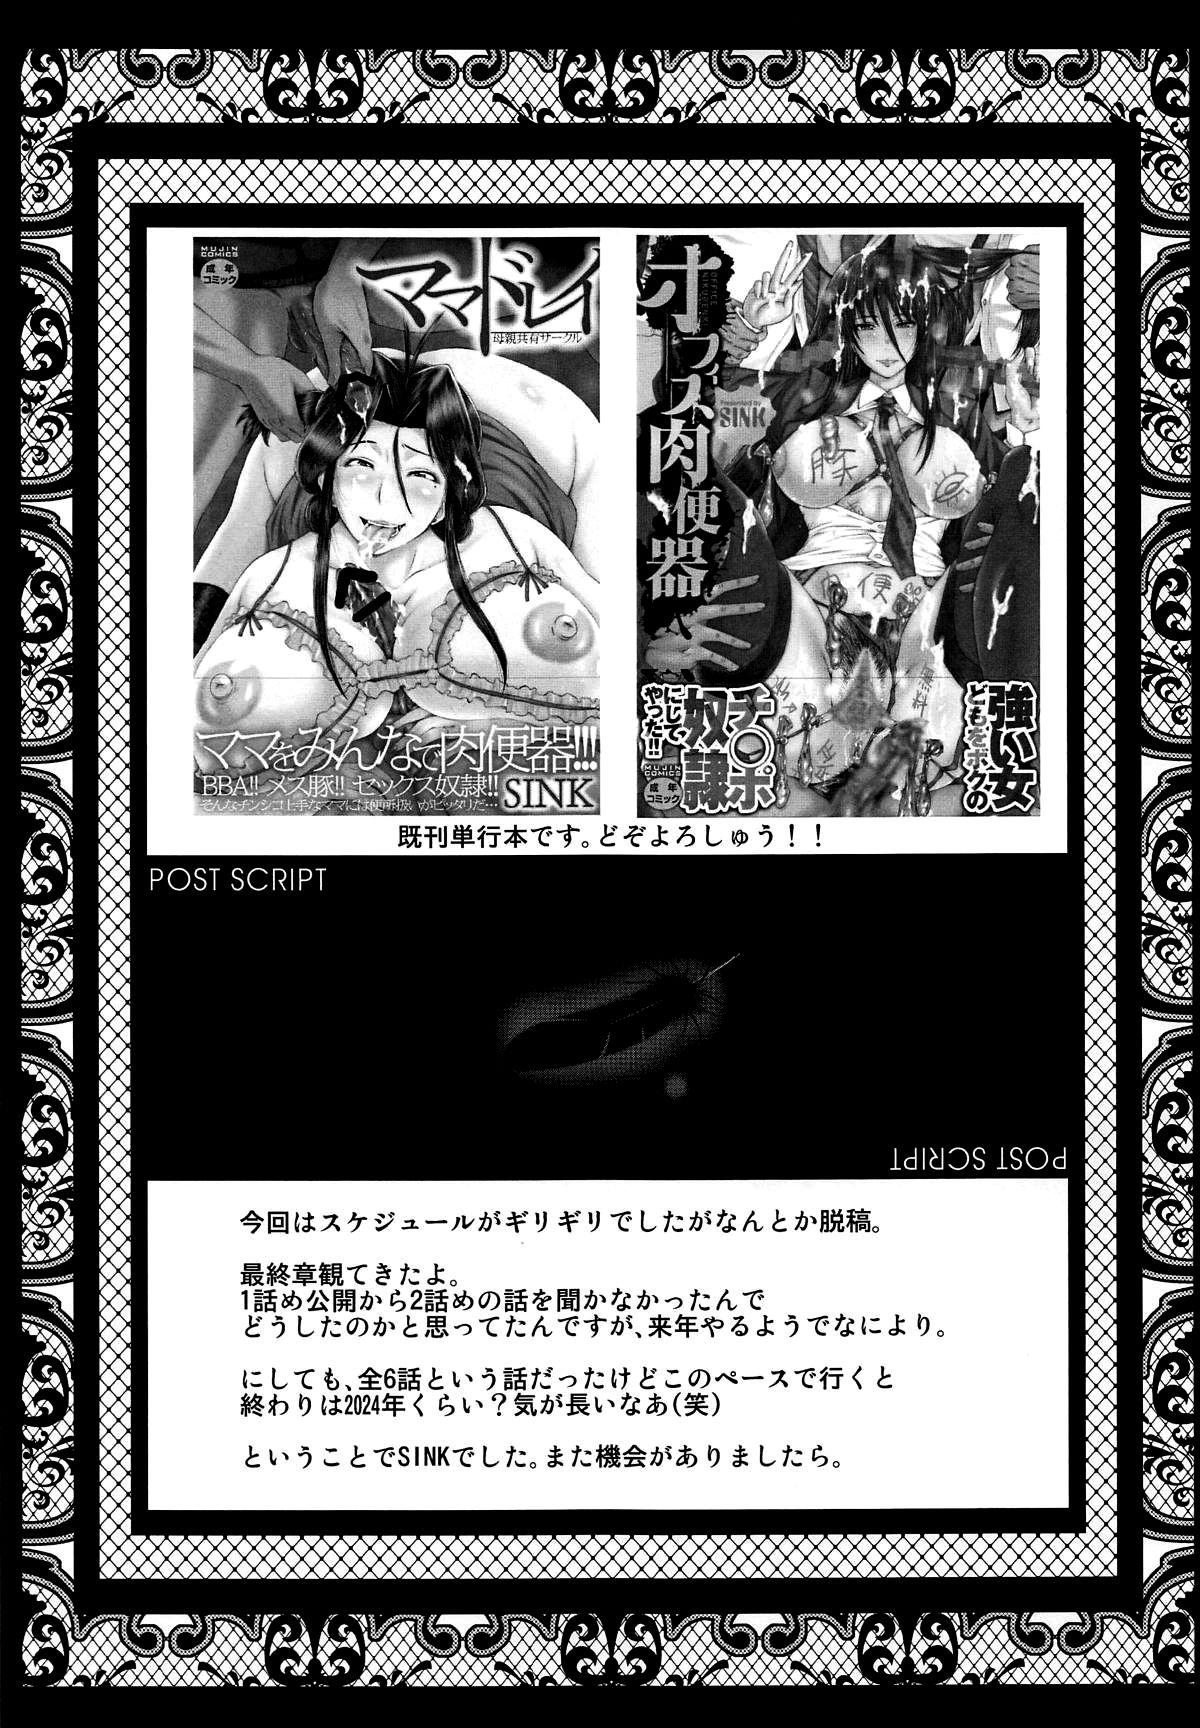 Urabambi Vol. 57 Taihai no Koutetsu Fujin | Urabambi Vol. 57 - Corruption Of The Steel Woman 22